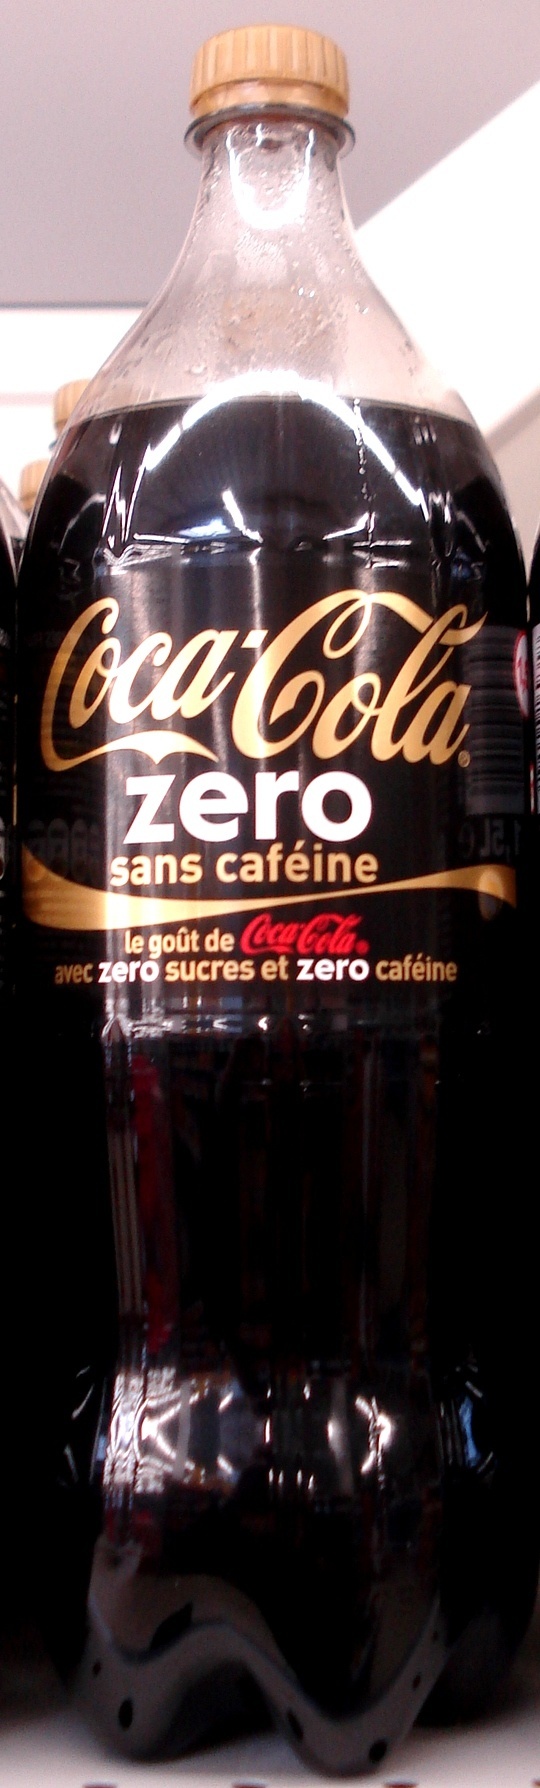 Coca Cola Zéro sans caféine - Product - fr